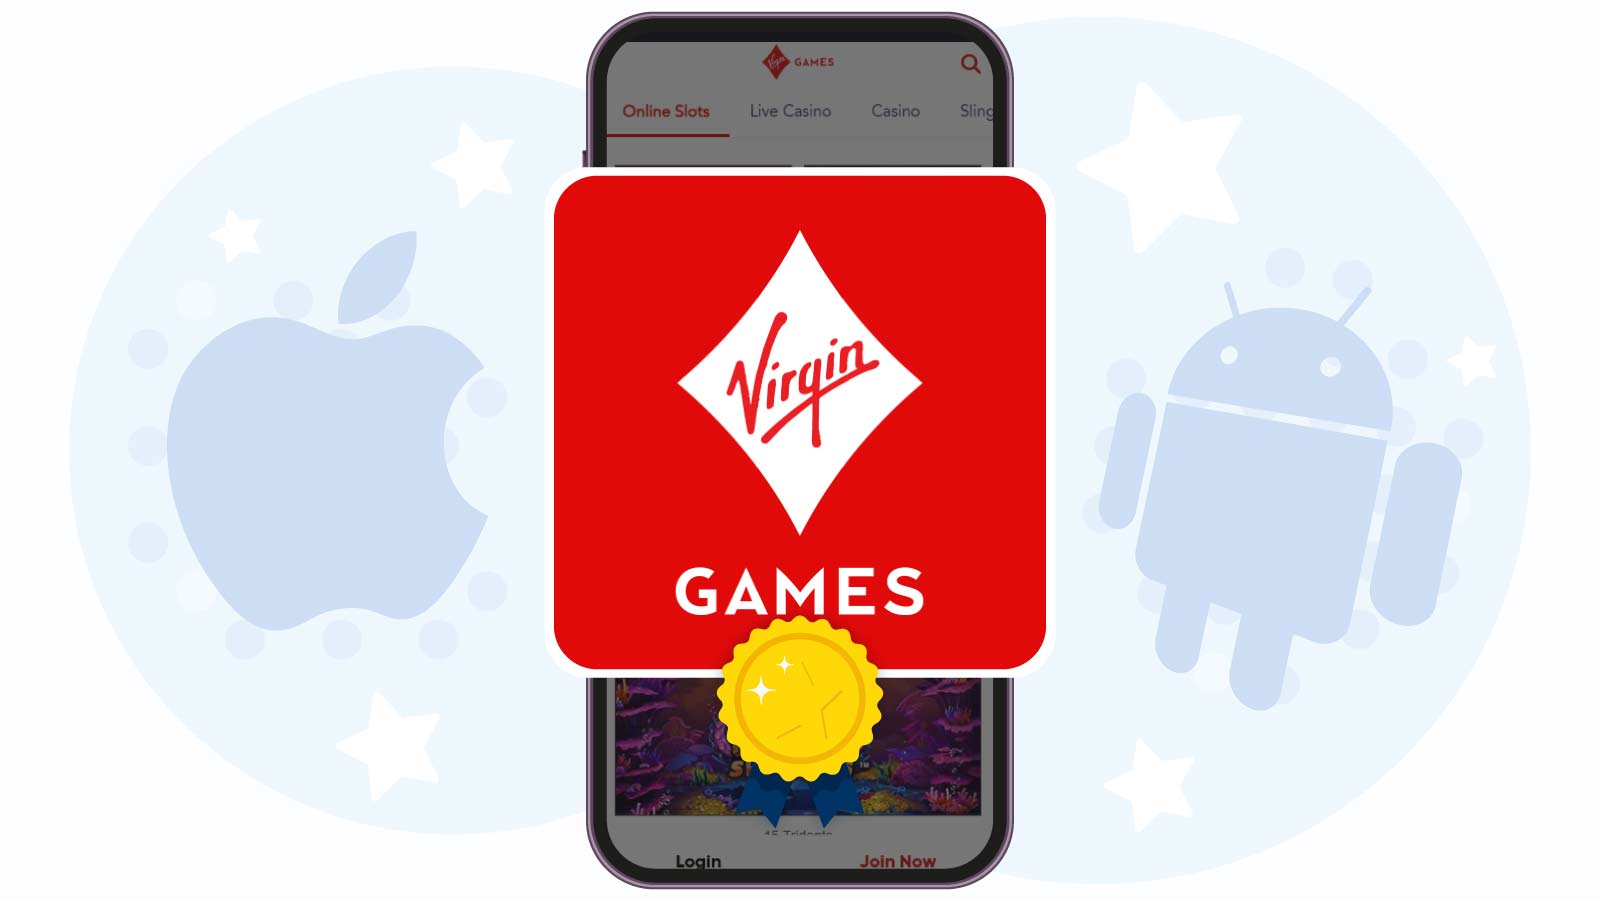 Virgin-Games-Casino-Download-the-Best-Casino-App-in-the-UK